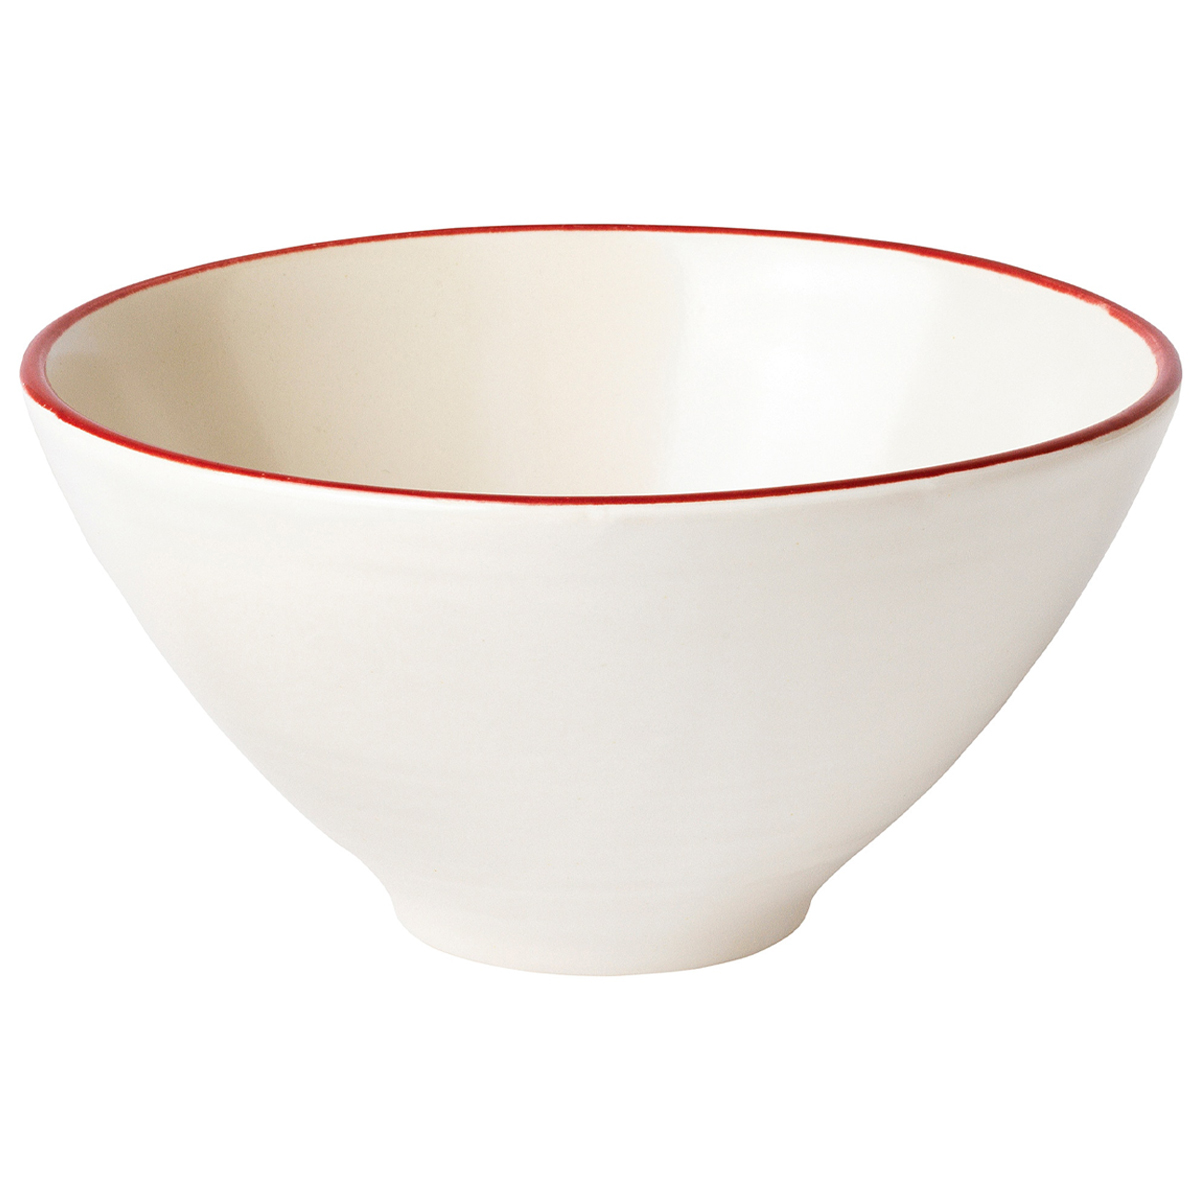 VINTER 2020 15cm zdjela, bijela/crvena